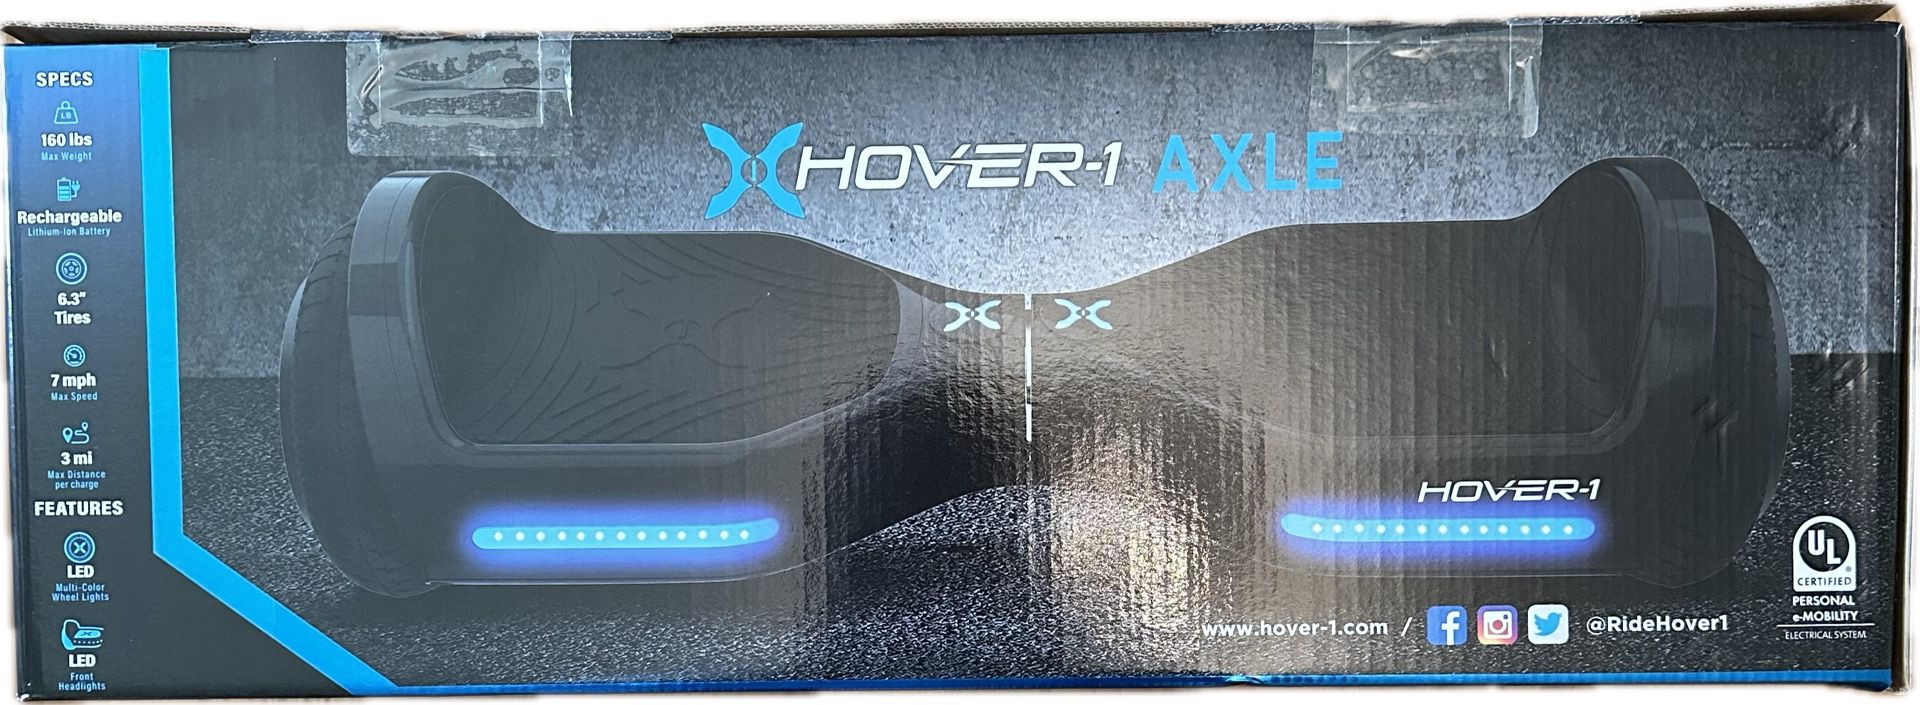 Hover-1 Axle Hover Board